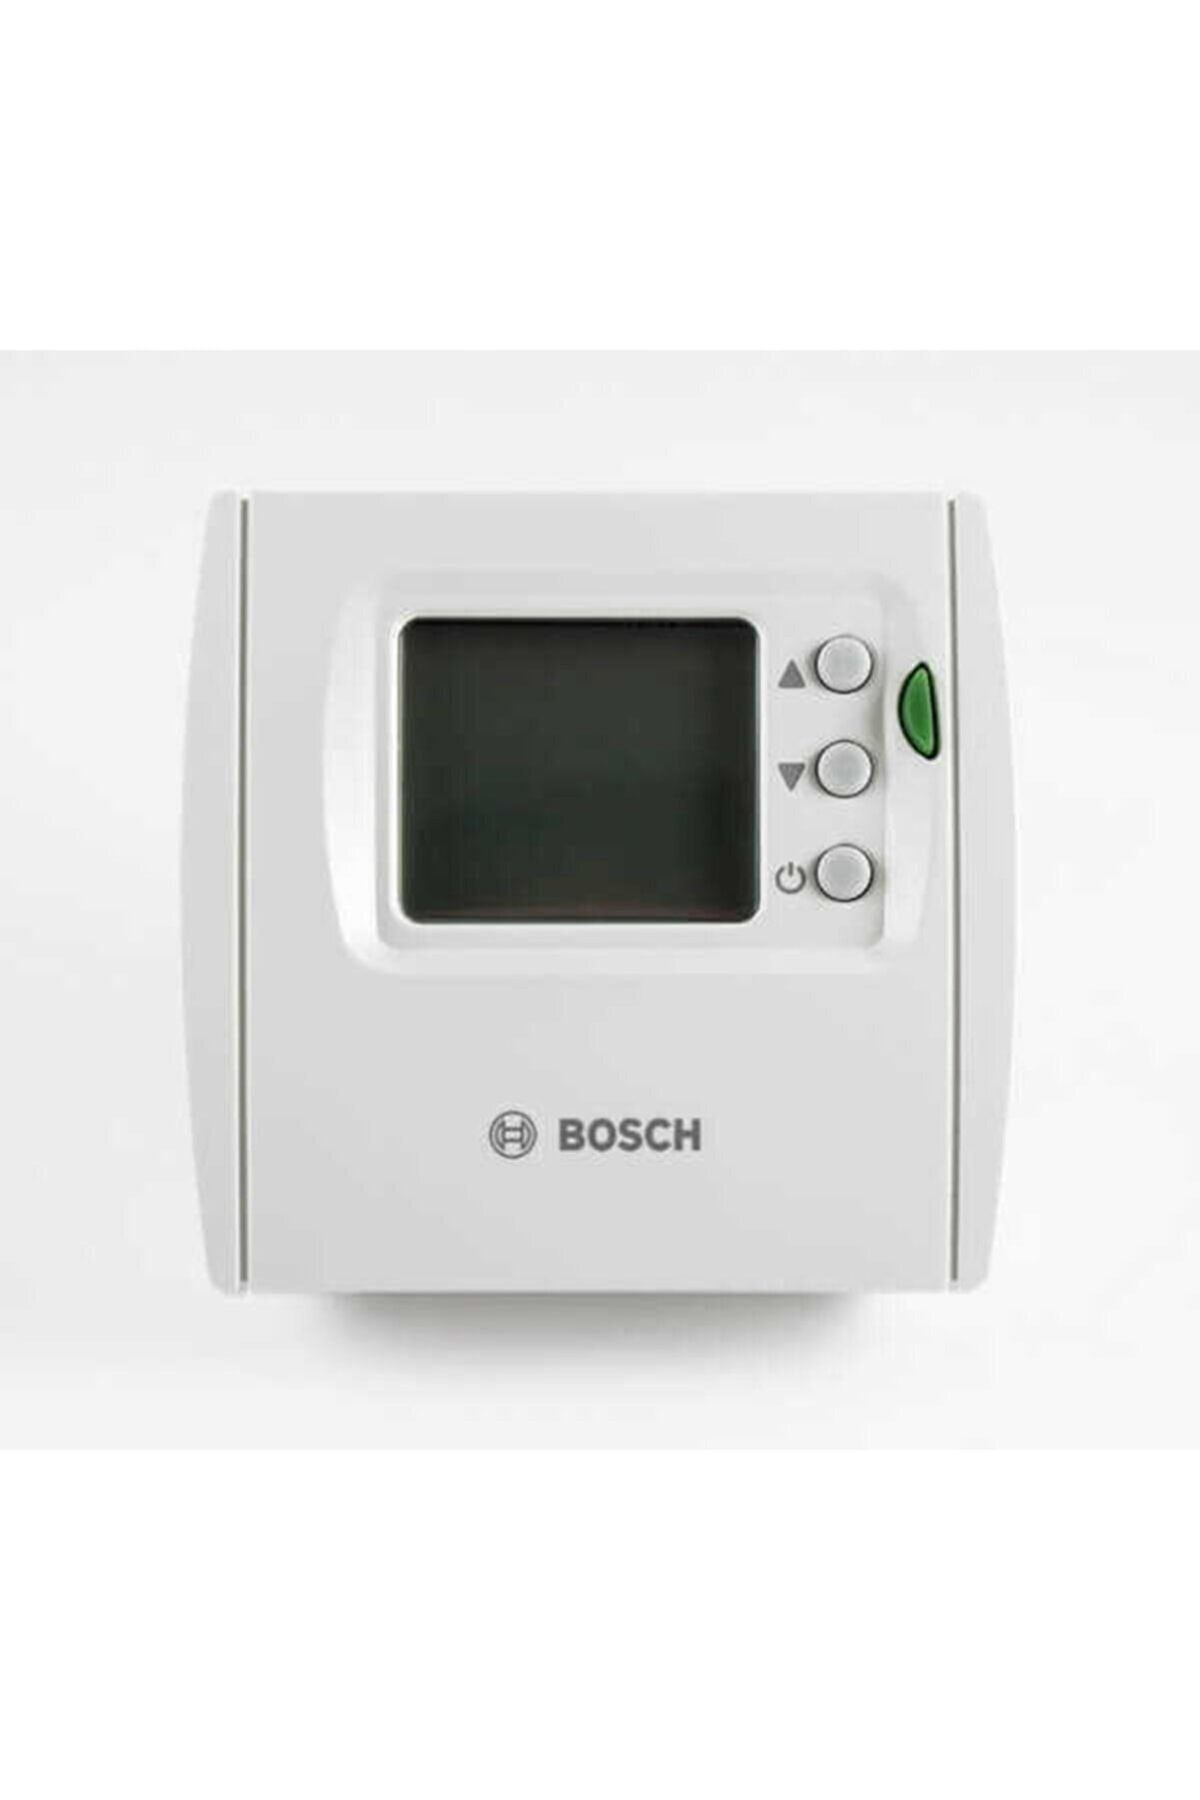 Bosch Tr 24 Rf Kablosuz On/off Oda Termostatı.